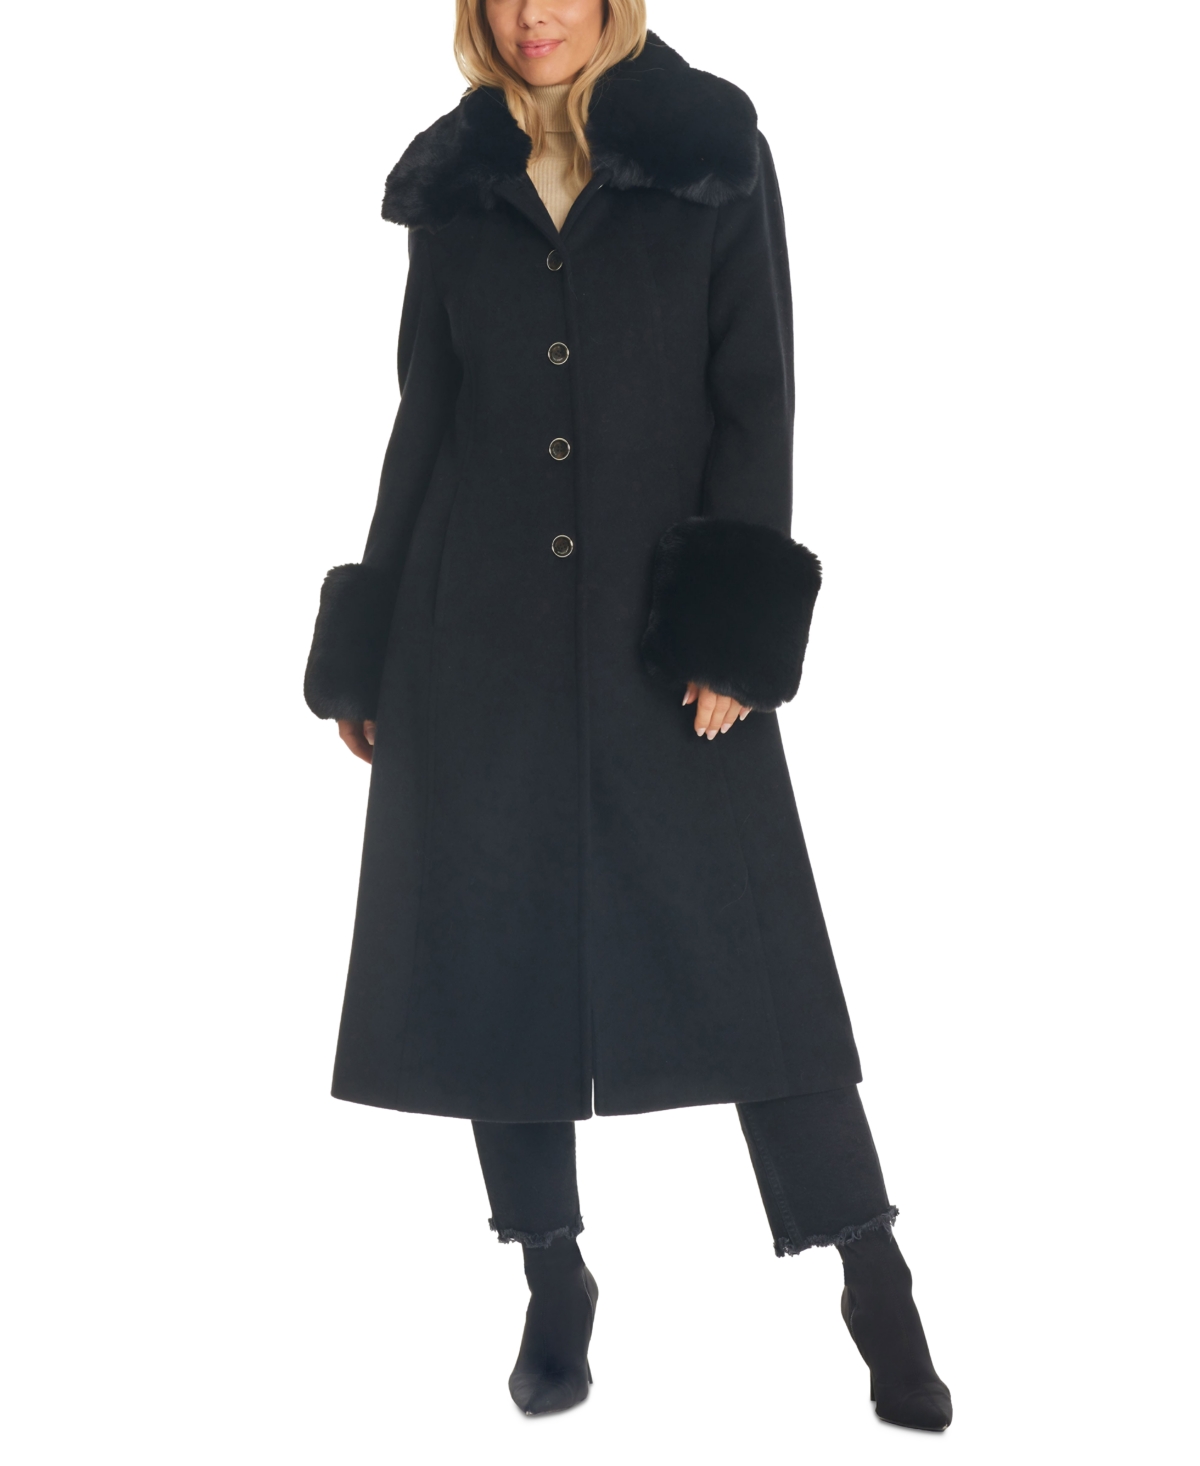 Women's Single-Breasted Faux-Fur-Trimmed Wool Blend Coat - Black